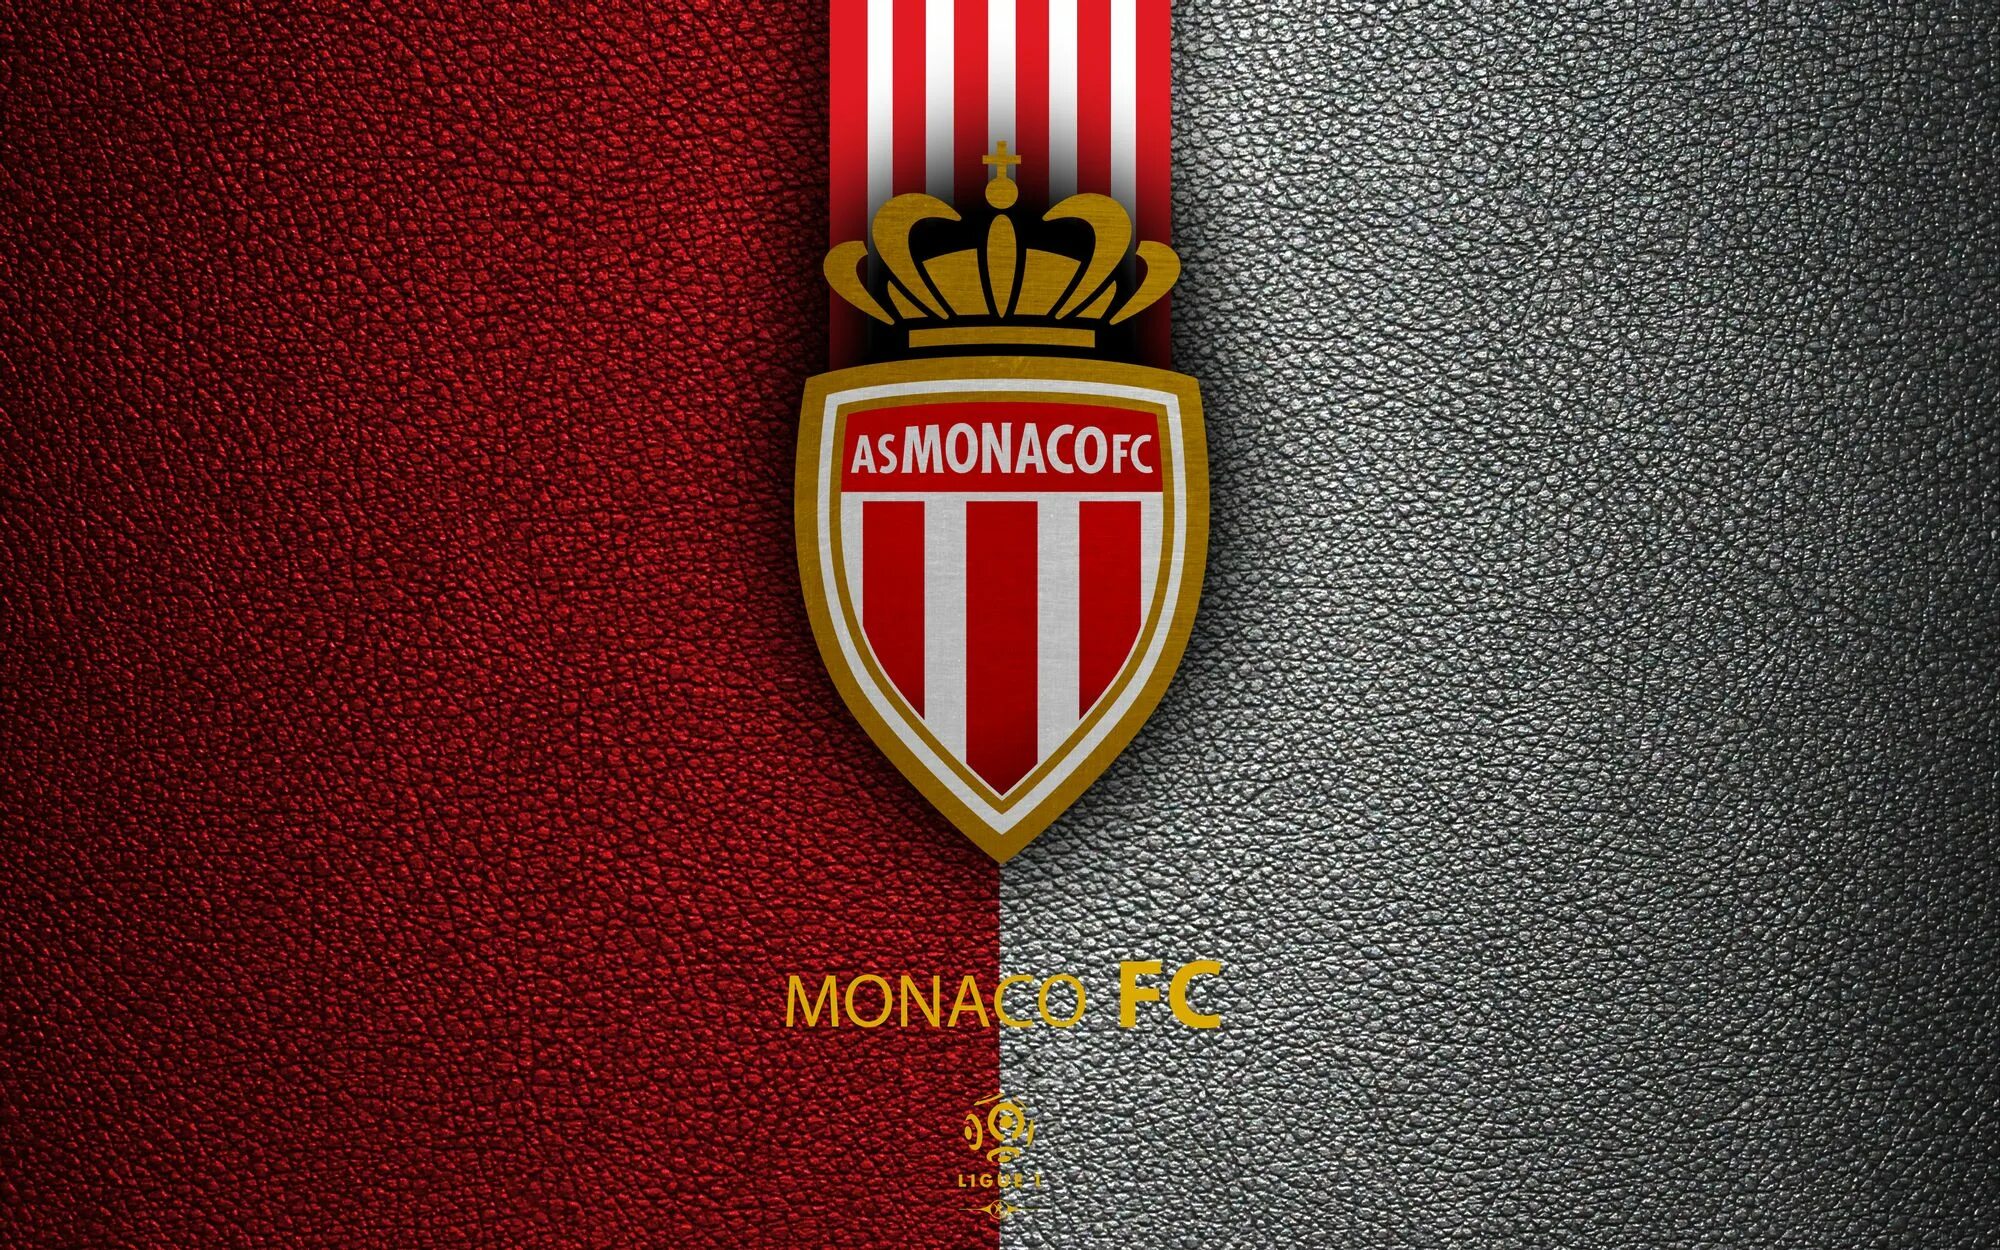 1.4 f c. Эмблема Монако футбольного клуба. ФК Монако лого. Монако футбольный клуб герб. Эмблема футбольного клуба манакк о.